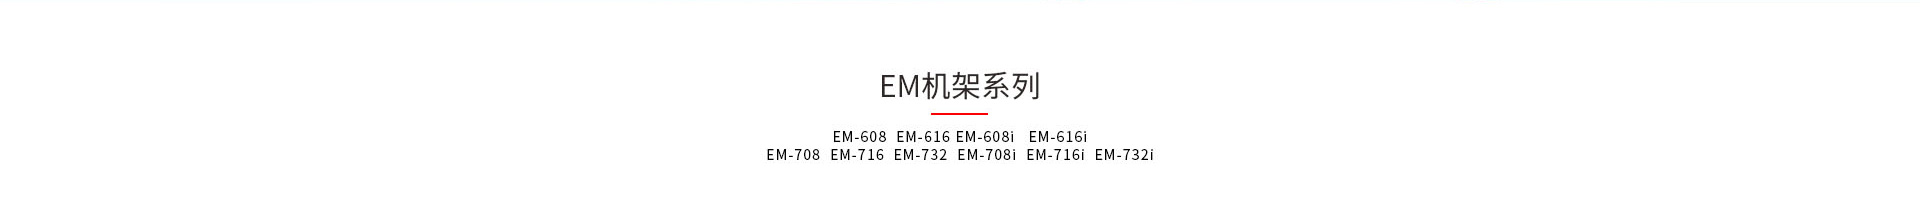 神盾卫士EM和EMI机架式kvm产品型号大全